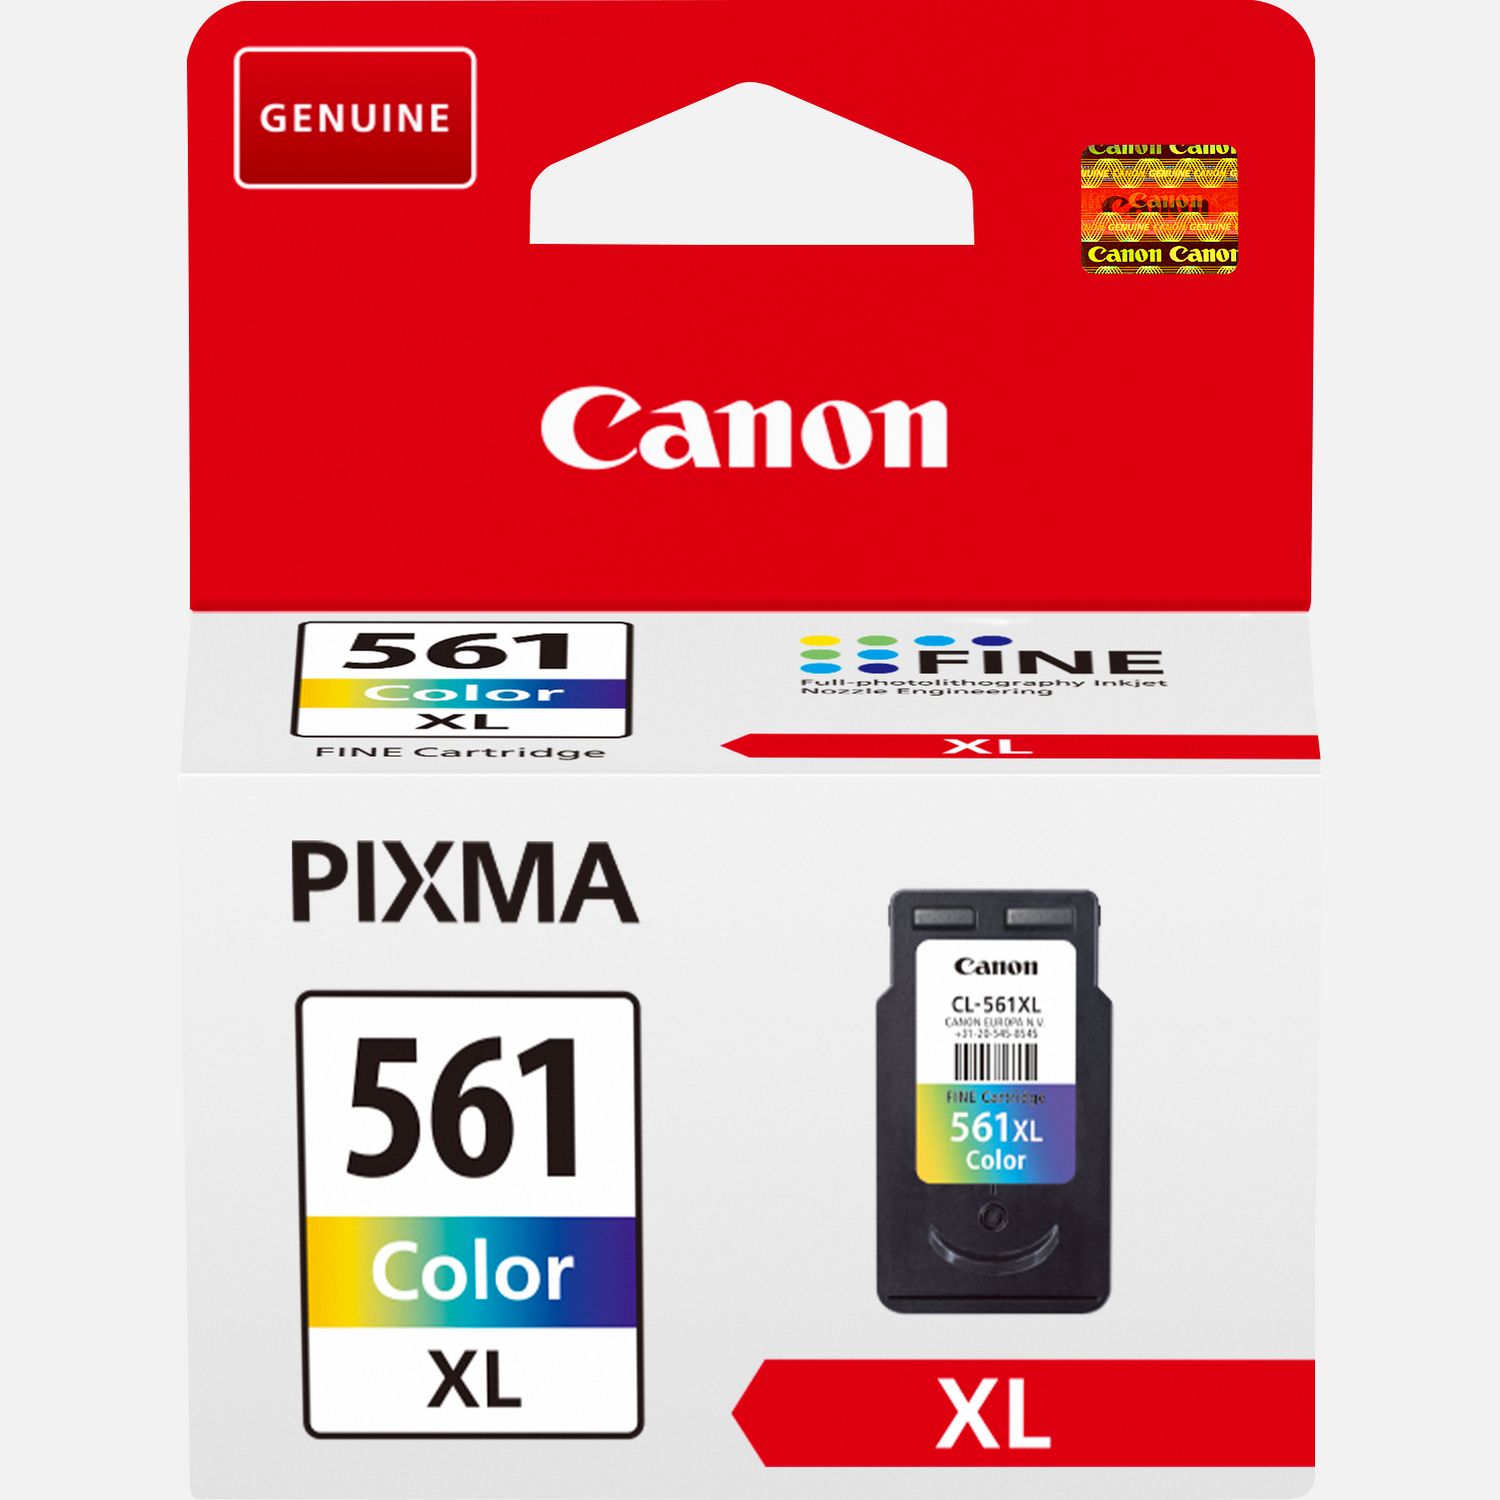 Canon PG-561XL - Cartucho de Tinta Original Color - Para Impresoras Pixma TS5350, TS5351, TS5352, TS5351 - PG561XL